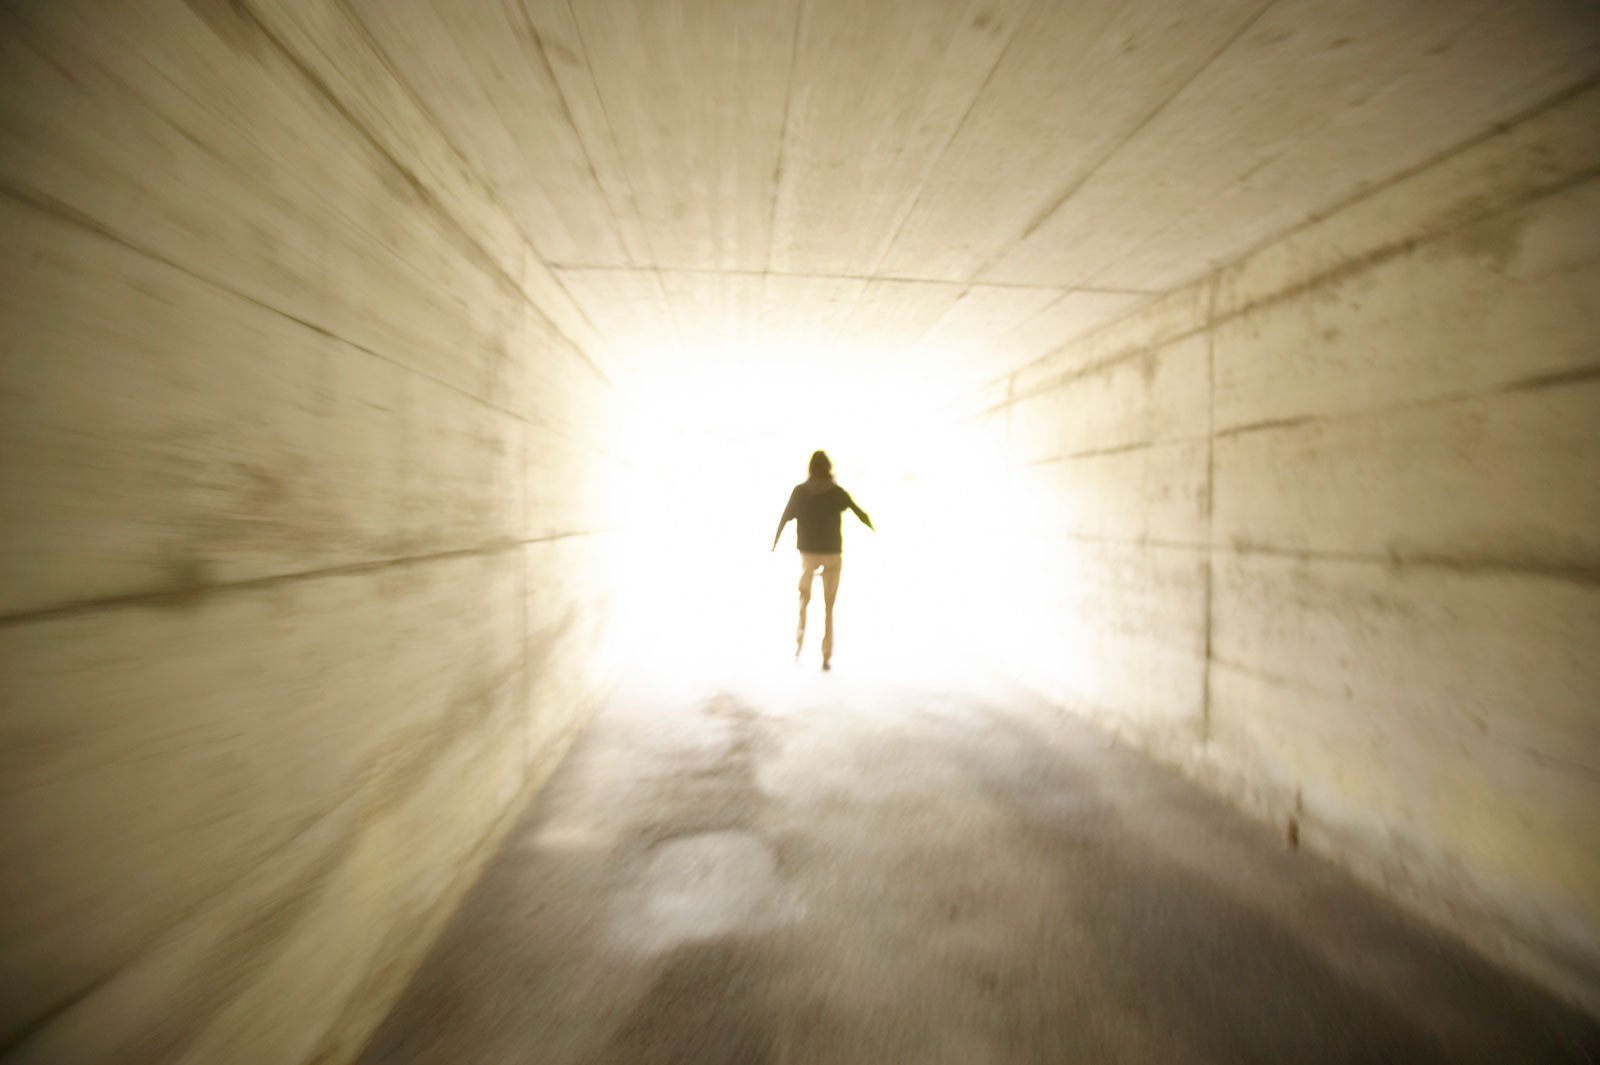 Смерть это новая жизнь. Свет после смерти. Свет в конце тоннеля. Человек идет на свет. Свет в конце туннеля после смерти.